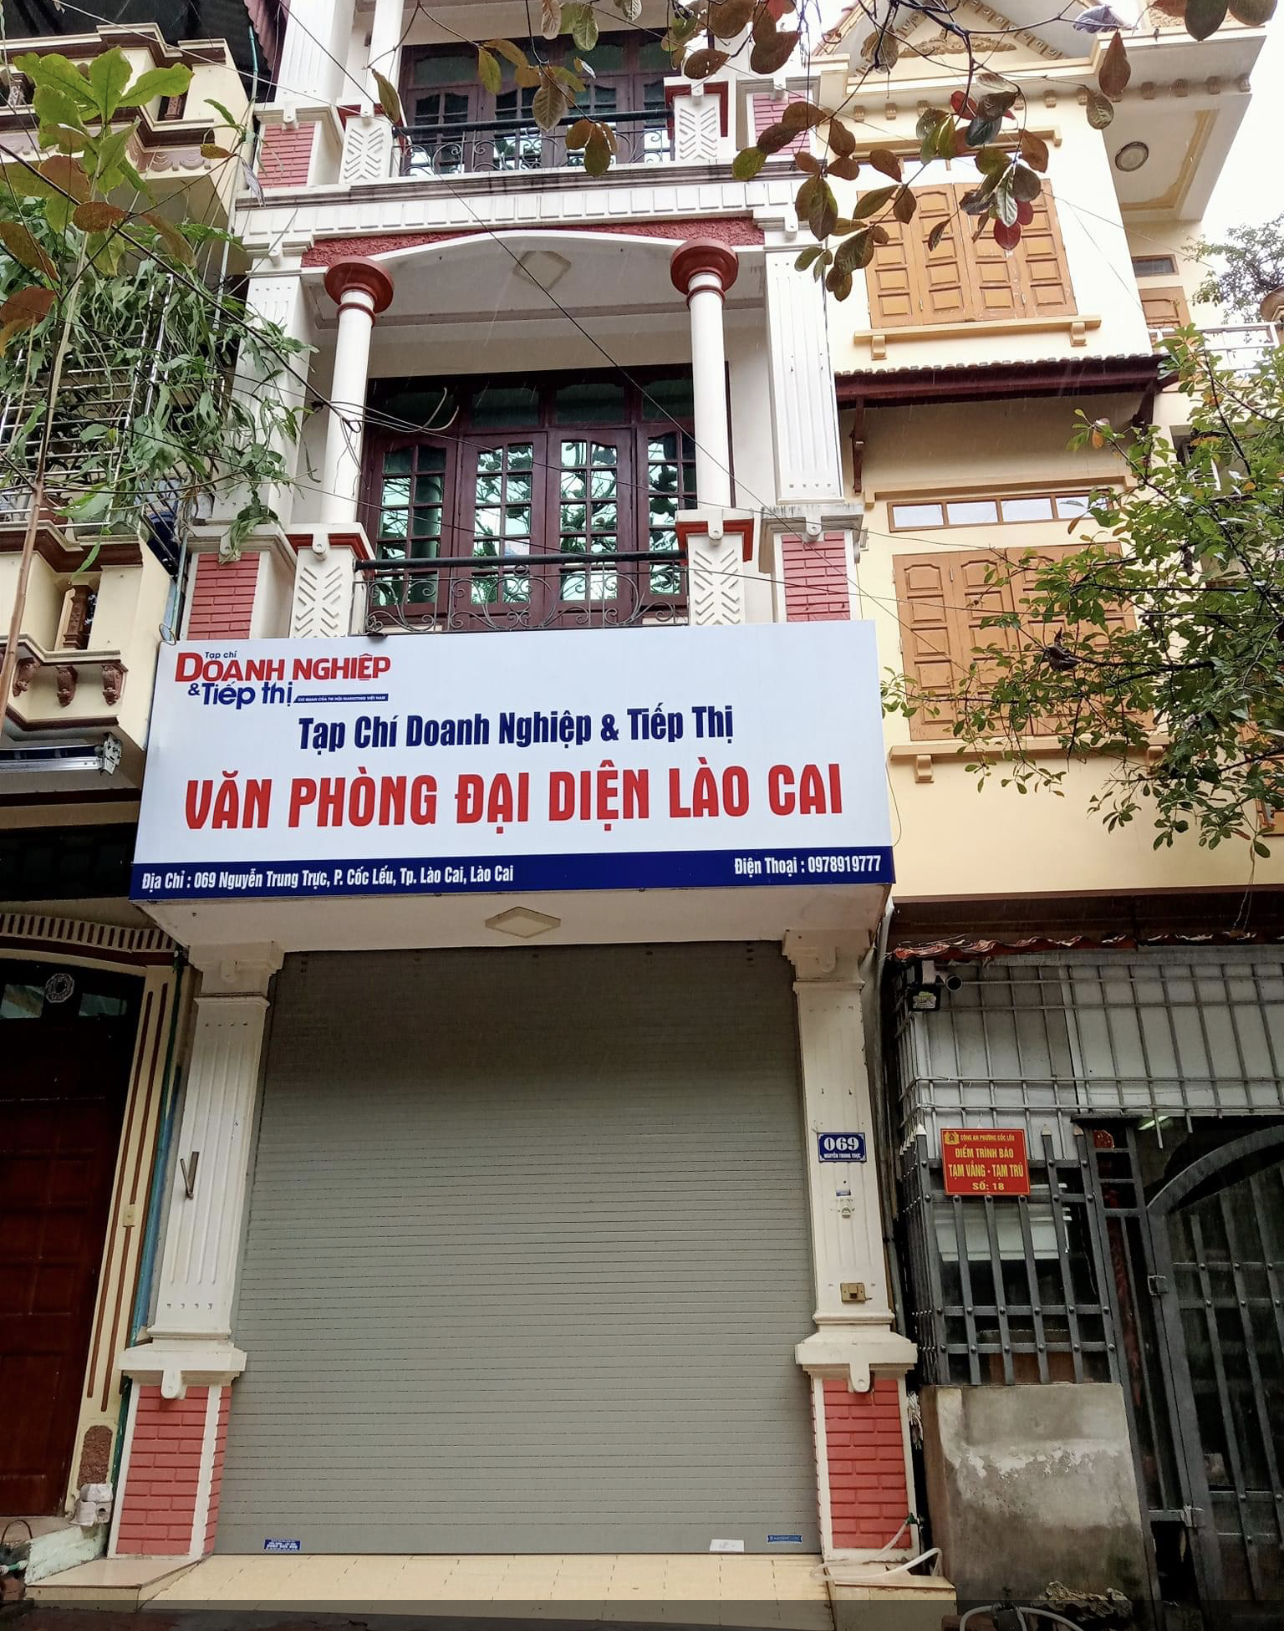 Bán nhà đường Nguyễn Trung Trực, P. Cốc Lếu, TT TP Lào Cai.